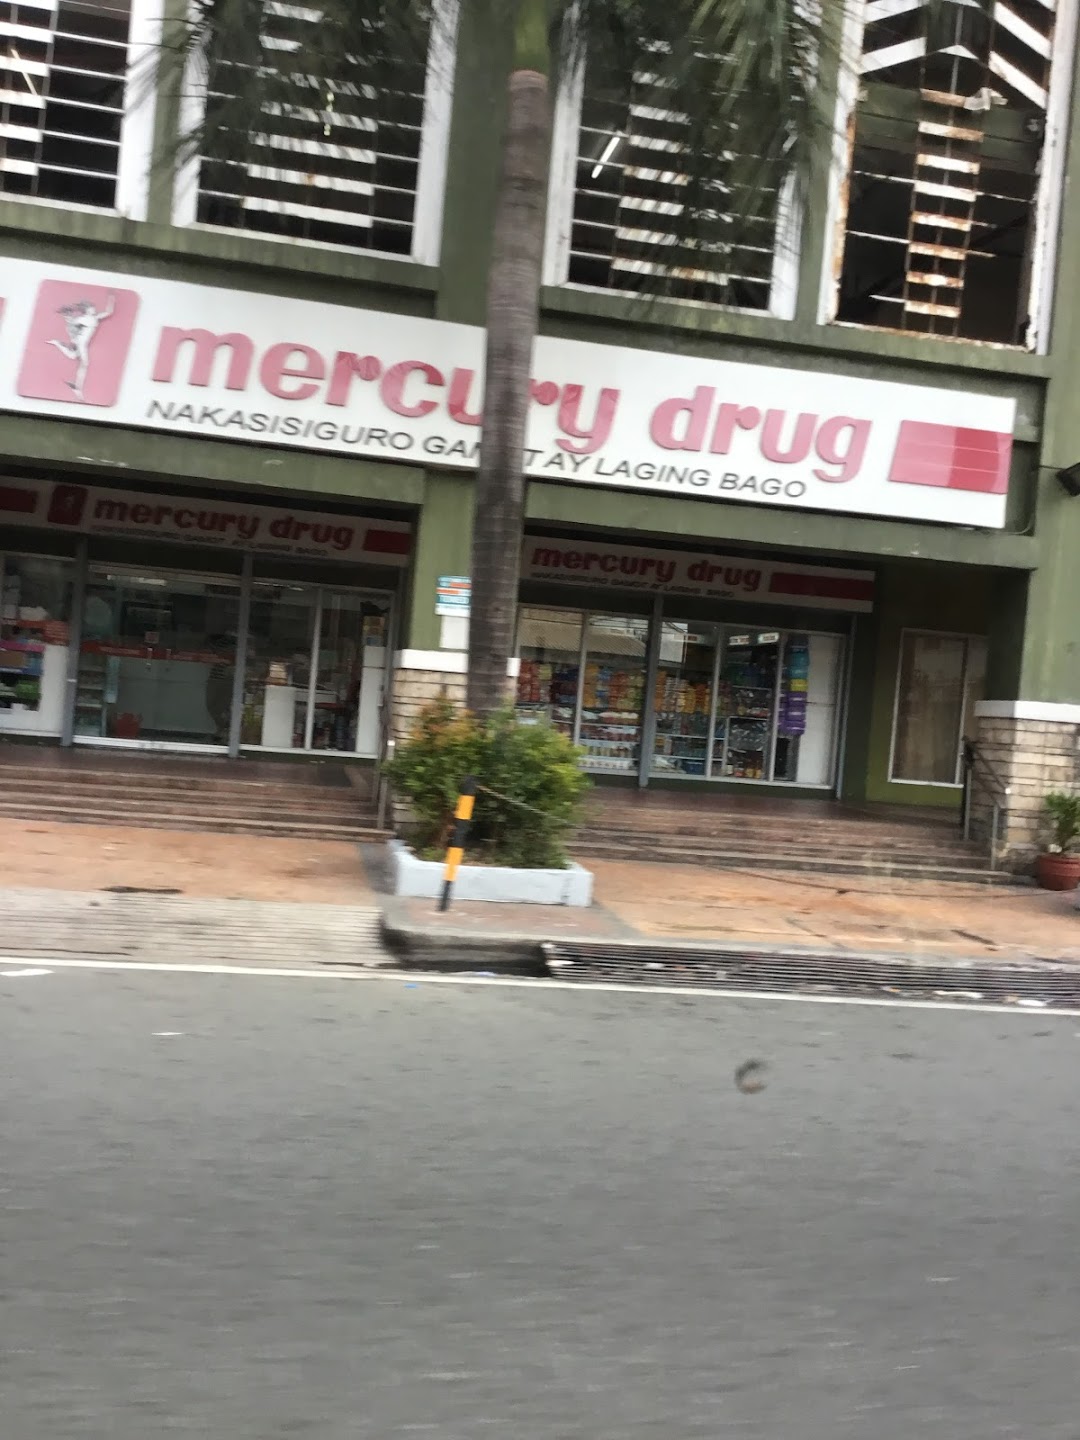 Mercury Drug California Garden Square